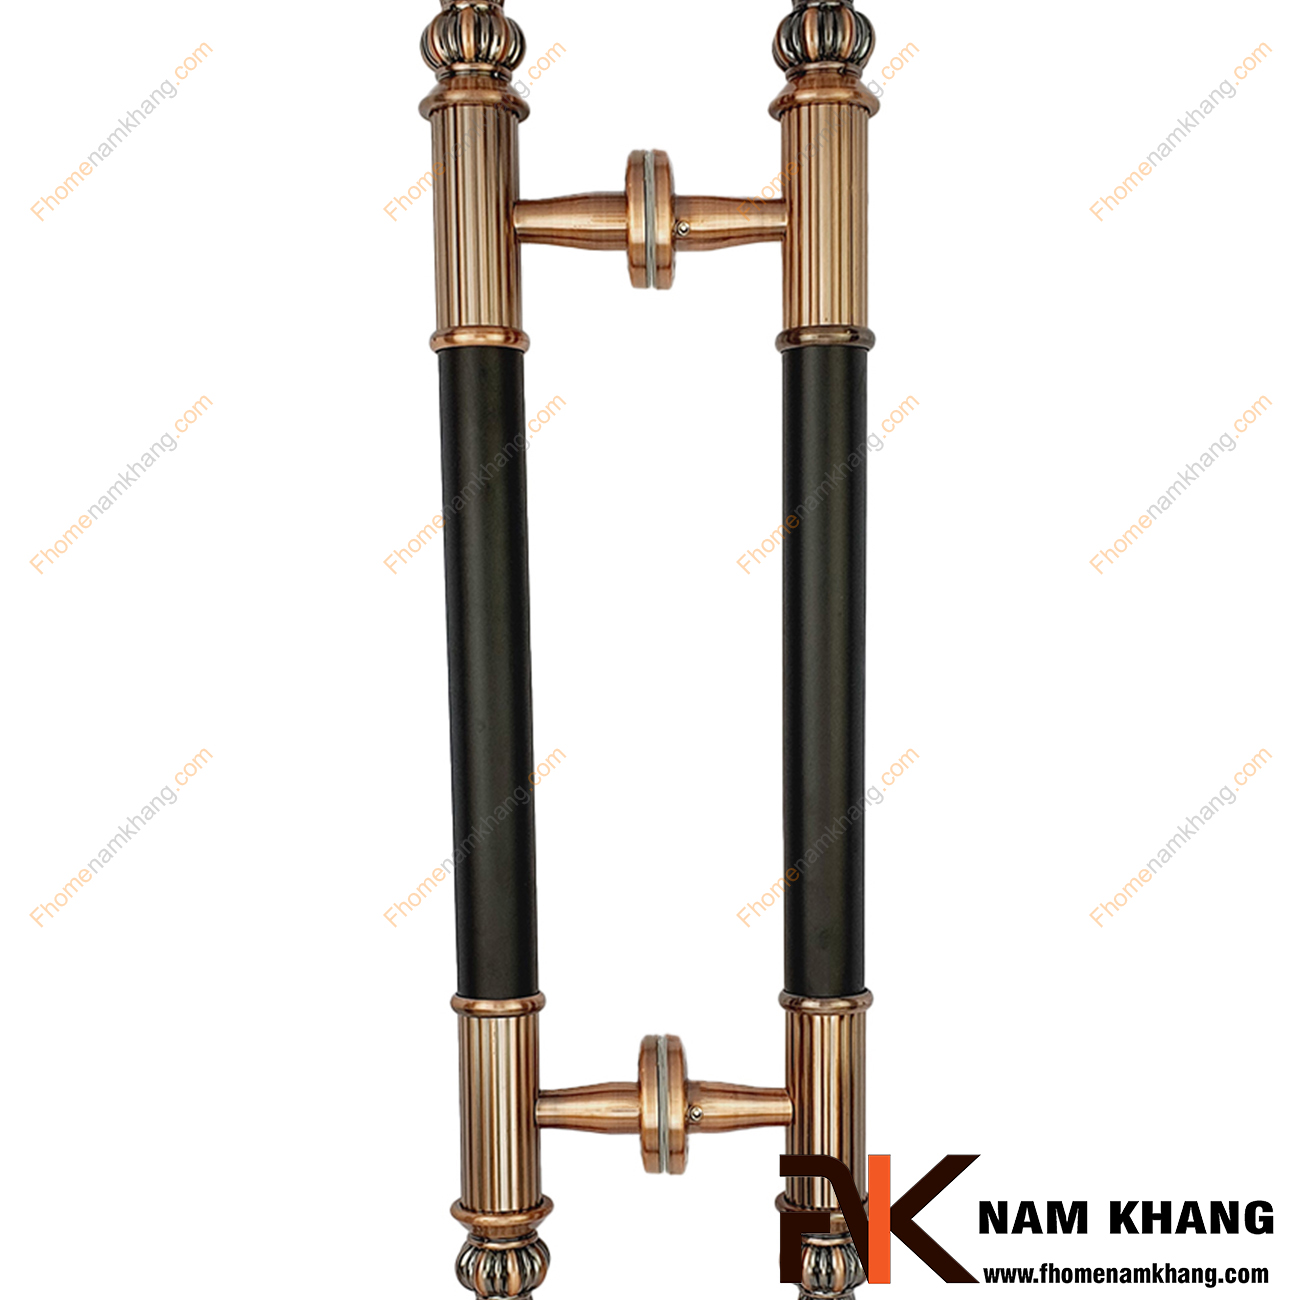 Tay nắm cửa chính màu đồng cổ phối thân đen NKC013-TD được sản xuất từ chất liệu cao cấp, có kích thước lớn chuyên dùng cho cửa kính, cửa gỗ, cửa 2 hoặc 4 cánh,...